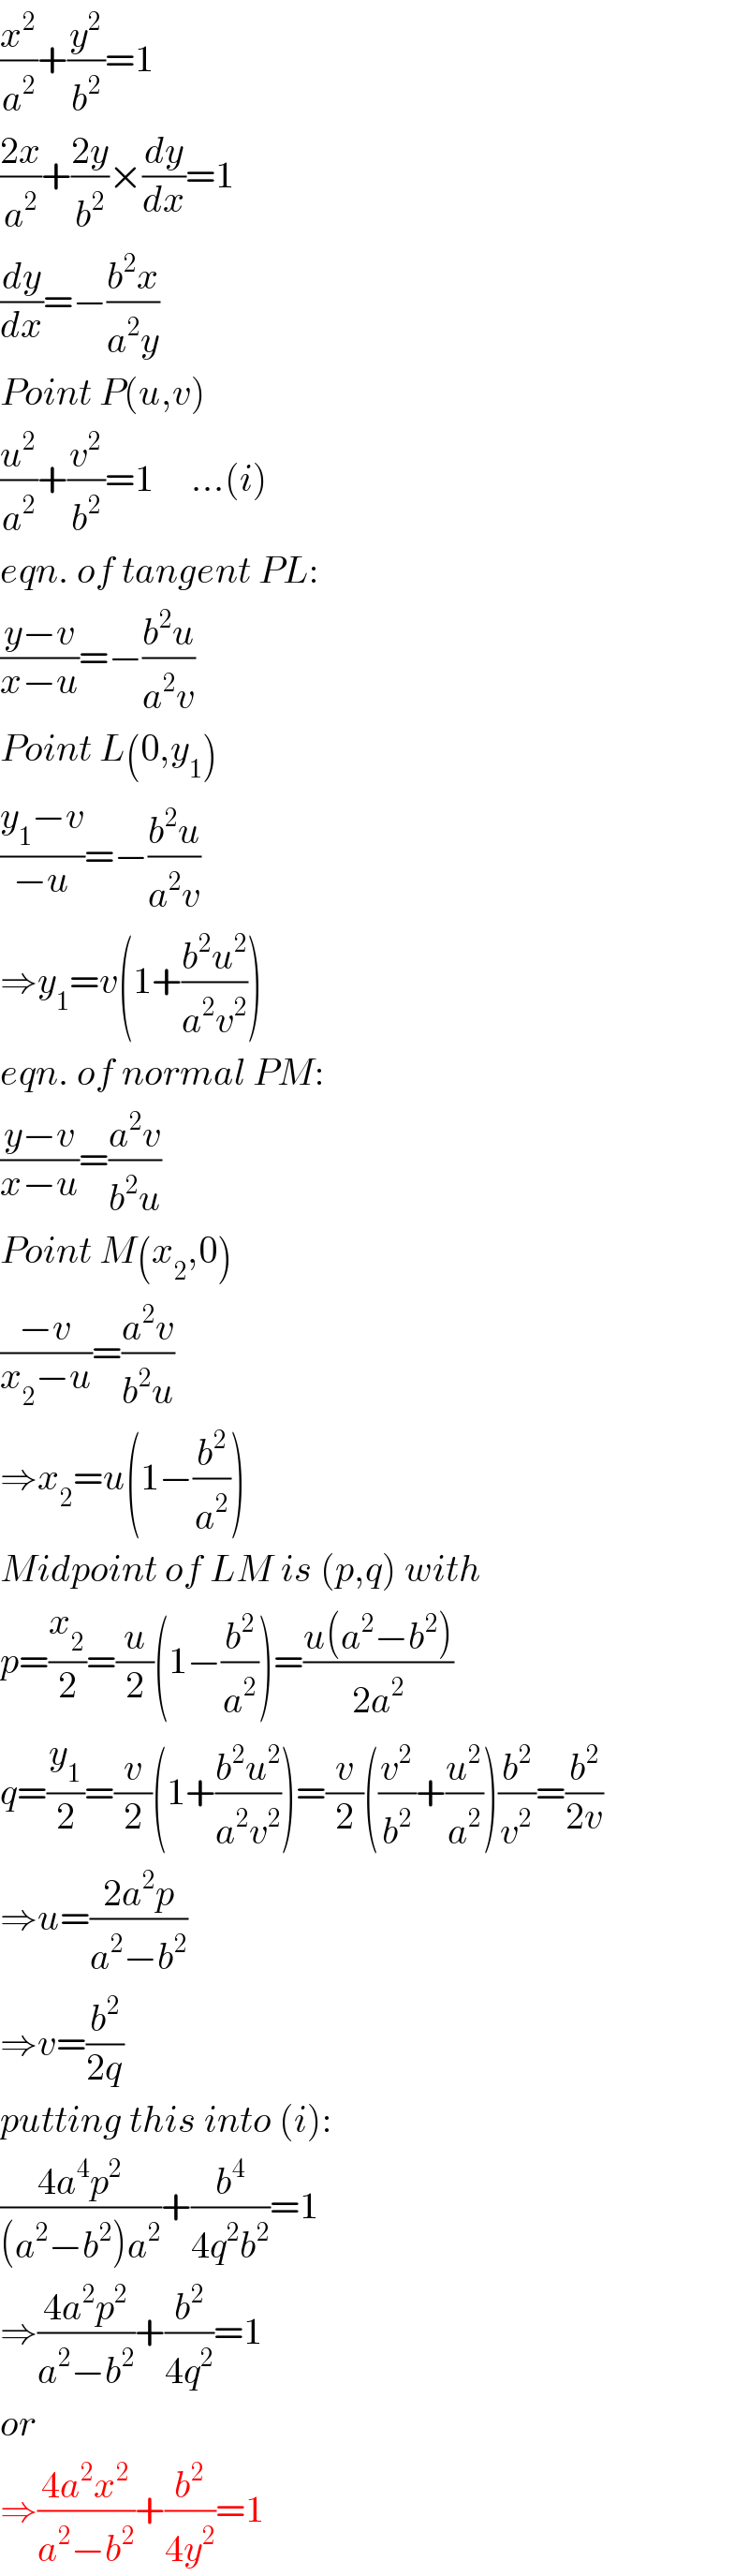 (x^2 /a^2 )+(y^2 /b^2 )=1  ((2x)/a^2 )+((2y)/b^2 )×(dy/dx)=1  (dy/dx)=−((b^2 x)/(a^2 y))  Point P(u,v)  (u^2 /a^2 )+(v^2 /b^2 )=1     ...(i)  eqn. of tangent PL:  ((y−v)/(x−u))=−((b^2 u)/(a^2 v))  Point L(0,y_1 )  ((y_1 −v)/(−u))=−((b^2 u)/(a^2 v))  ⇒y_1 =v(1+((b^2 u^2 )/(a^2 v^2 )))  eqn. of normal PM:  ((y−v)/(x−u))=((a^2 v)/(b^2 u))  Point M(x_2 ,0)  ((−v)/(x_2 −u))=((a^2 v)/(b^2 u))  ⇒x_2 =u(1−(b^2 /a^2 ))  Midpoint of LM is (p,q) with  p=(x_2 /2)=(u/2)(1−(b^2 /a^2 ))=((u(a^2 −b^2 ))/(2a^2 ))  q=(y_1 /2)=(v/2)(1+((b^2 u^2 )/(a^2 v^2 )))=(v/2)((v^2 /b^2 )+(u^2 /a^2 ))(b^2 /v^2 )=(b^2 /(2v))  ⇒u=((2a^2 p)/(a^2 −b^2 ))  ⇒v=(b^2 /(2q))  putting this into (i):  ((4a^4 p^2 )/((a^2 −b^2 )a^2 ))+(b^4 /(4q^2 b^2 ))=1  ⇒((4a^2 p^2 )/(a^2 −b^2 ))+(b^2 /(4q^2 ))=1  or  ⇒((4a^2 x^2 )/(a^2 −b^2 ))+(b^2 /(4y^2 ))=1  